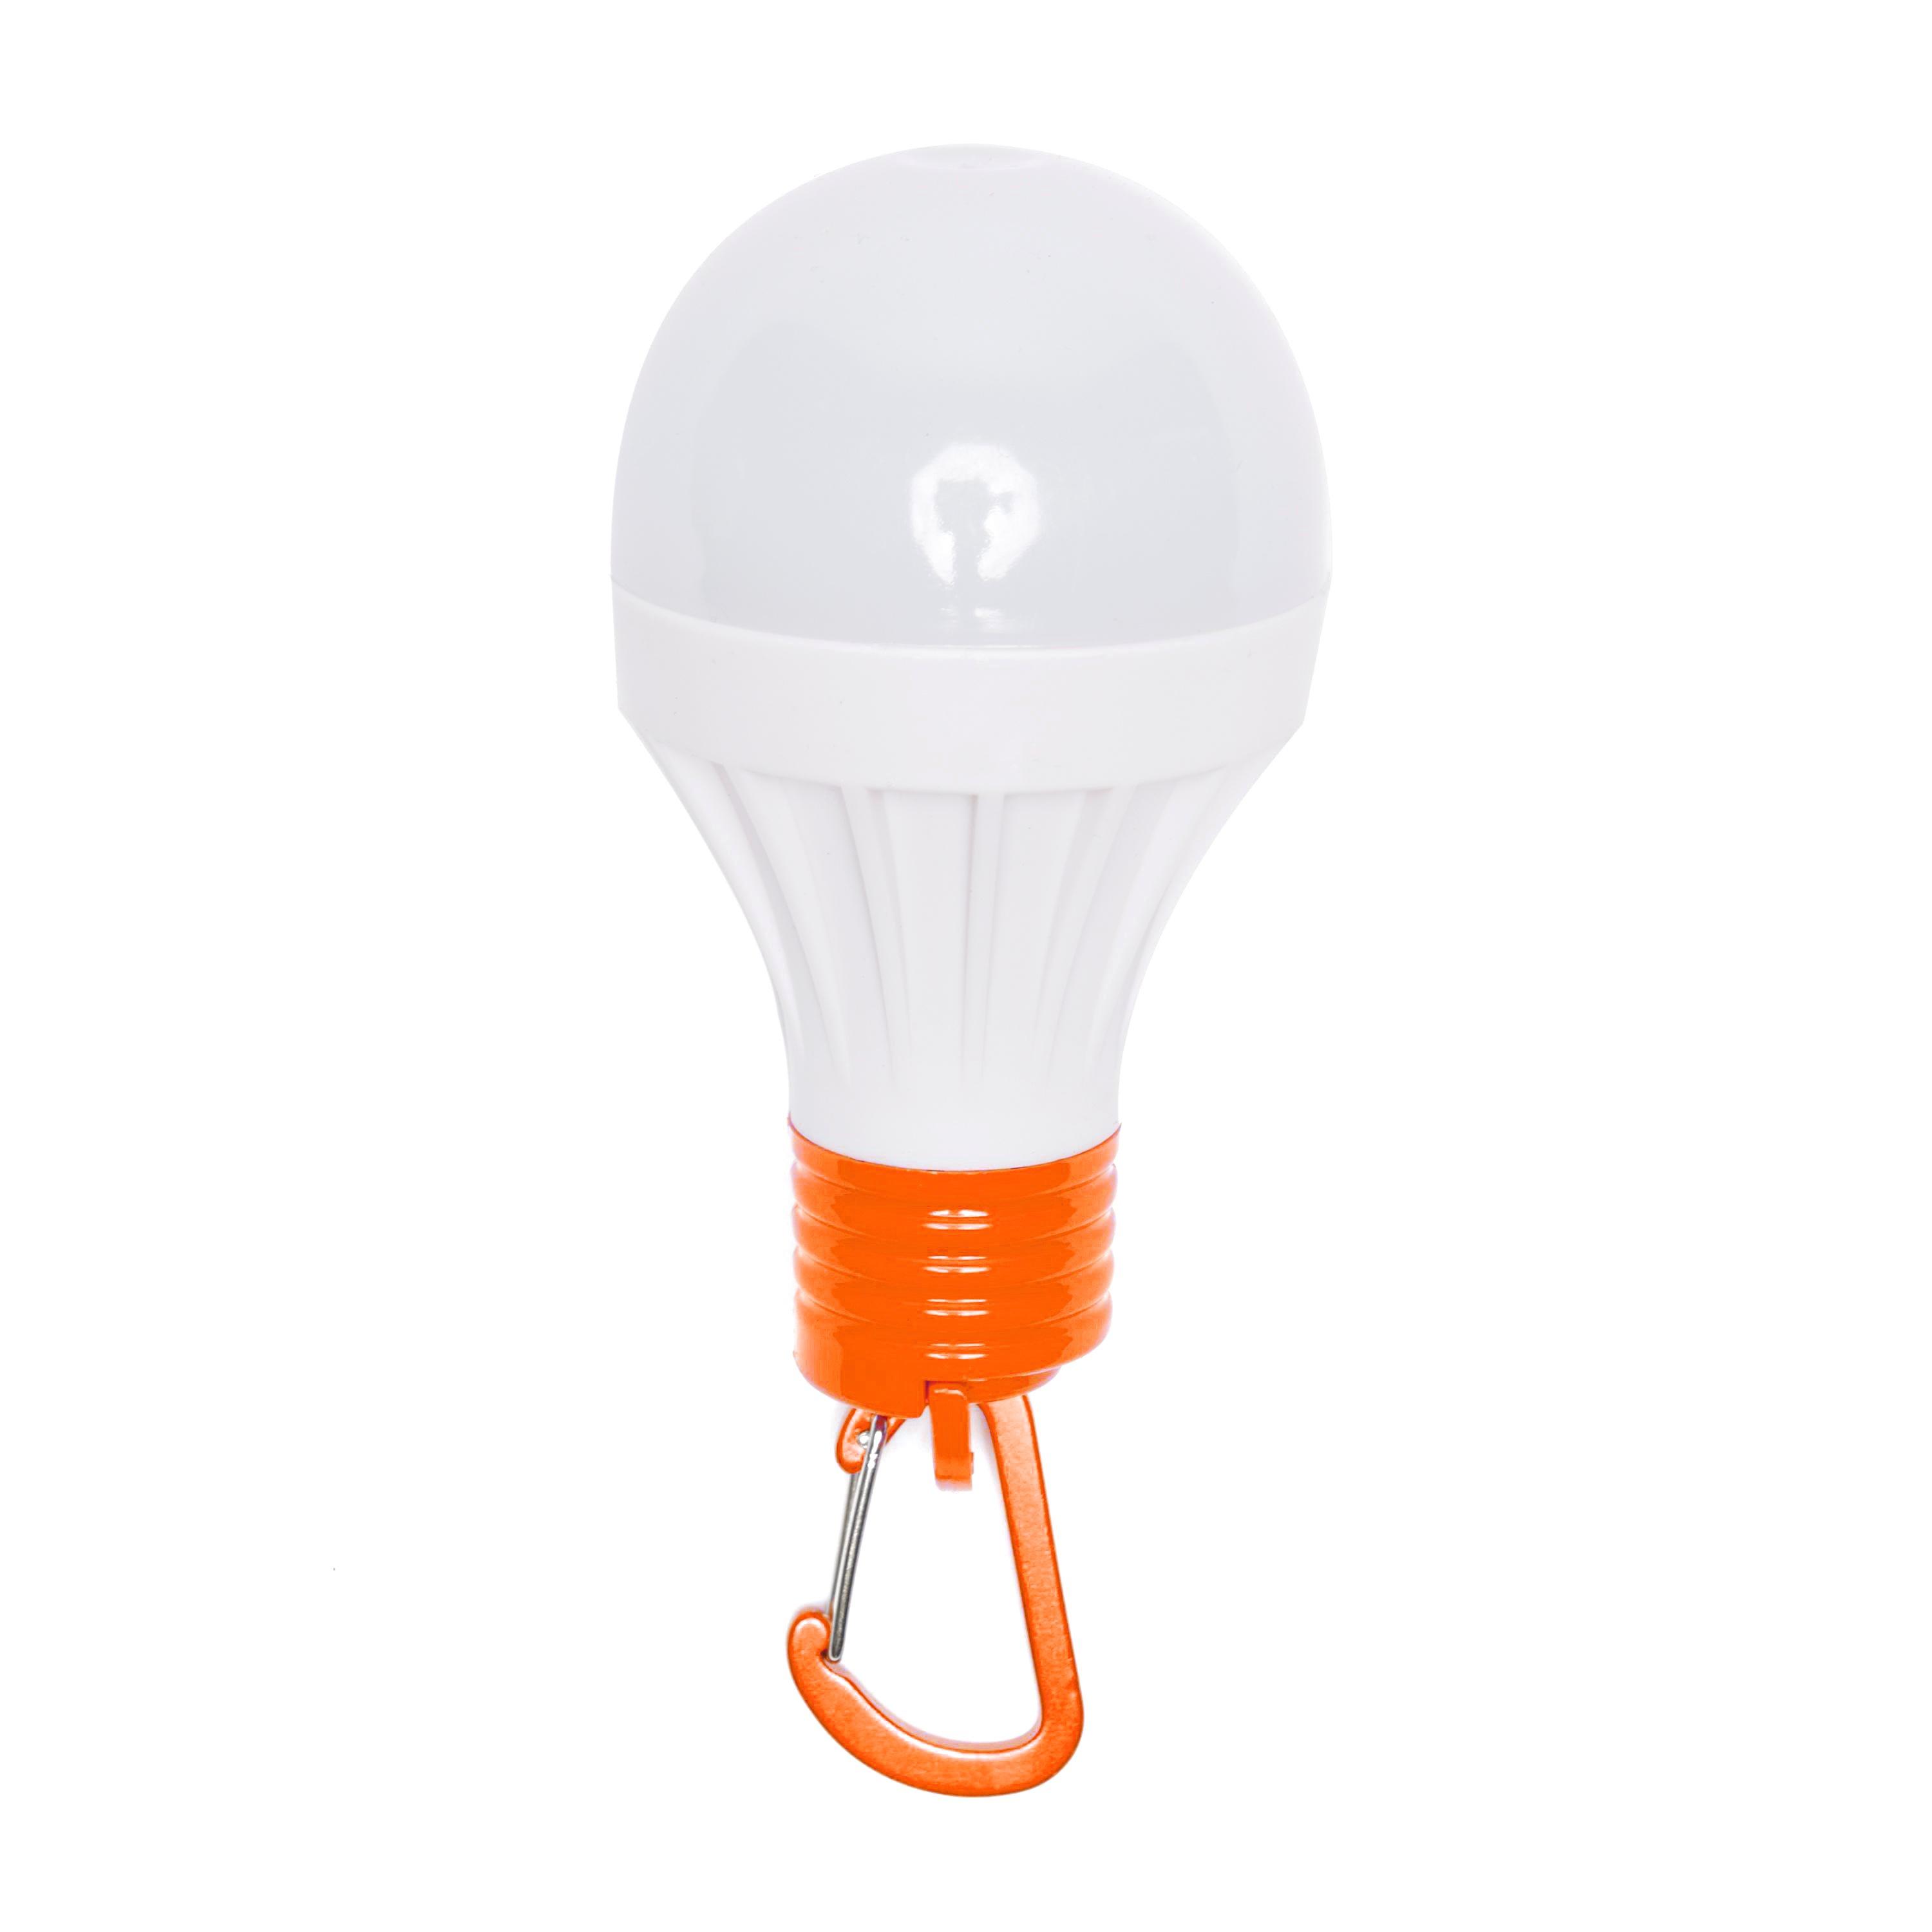 Eurohike 1W LED Orb Light, Orange